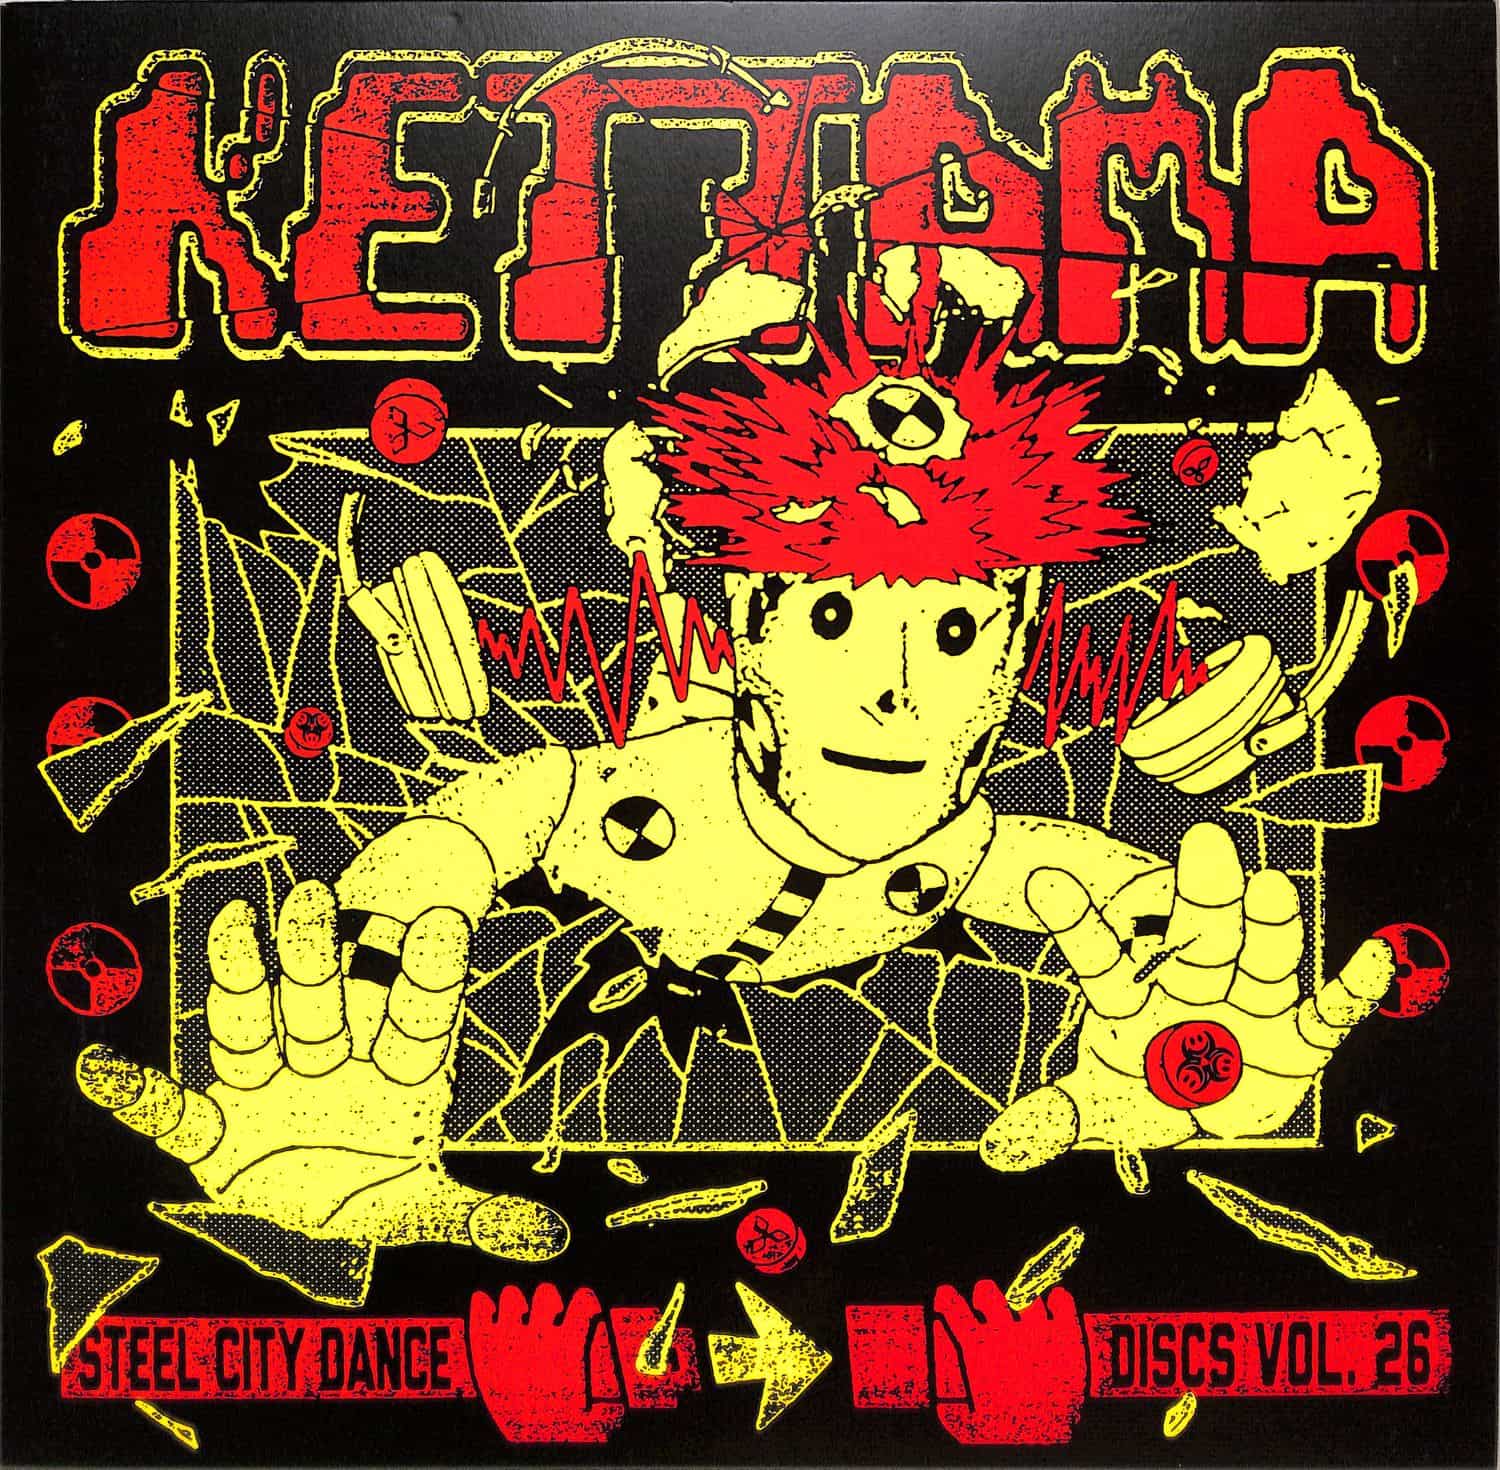 Kettama - STEEL CITY DANCE DISCS VOLUME 26